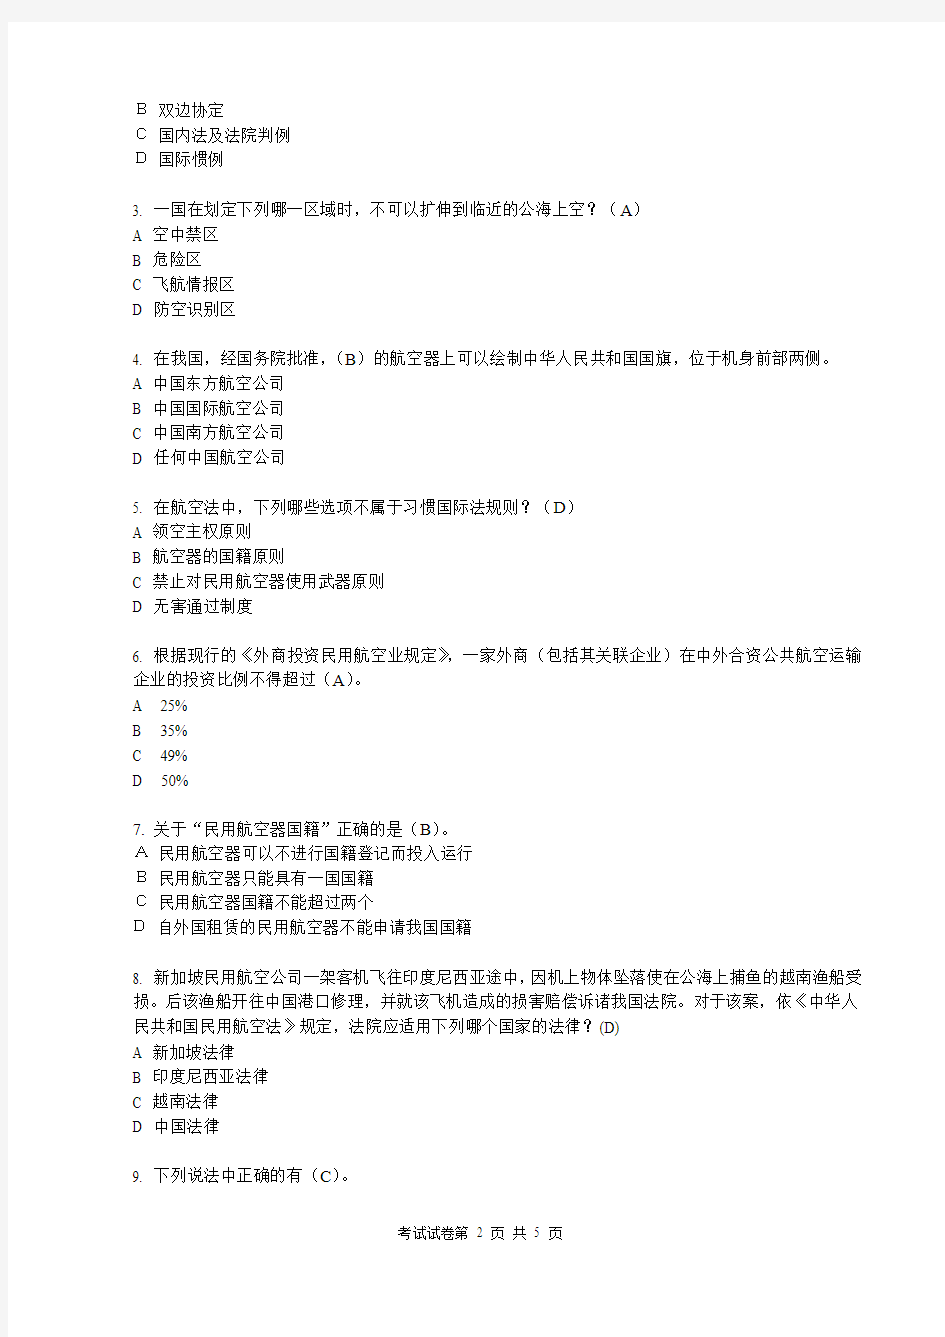 2010-2011(1)航空法试卷B答案  上海工程技术大学